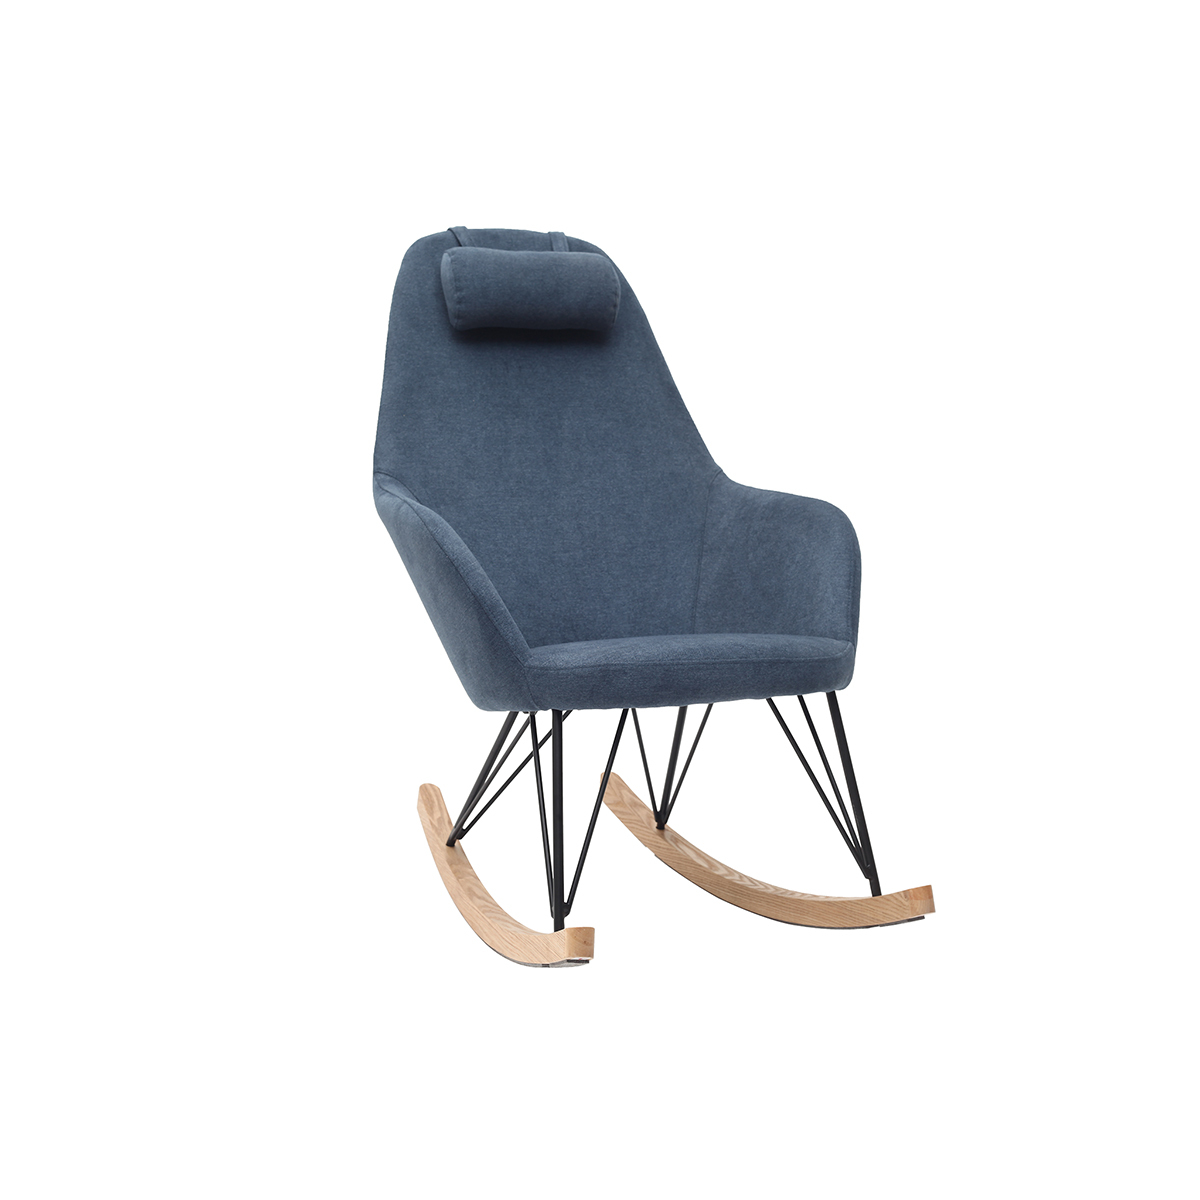 Rocking chair en tissu effet velours bleu, métal noir et bois clair JHENE vue1